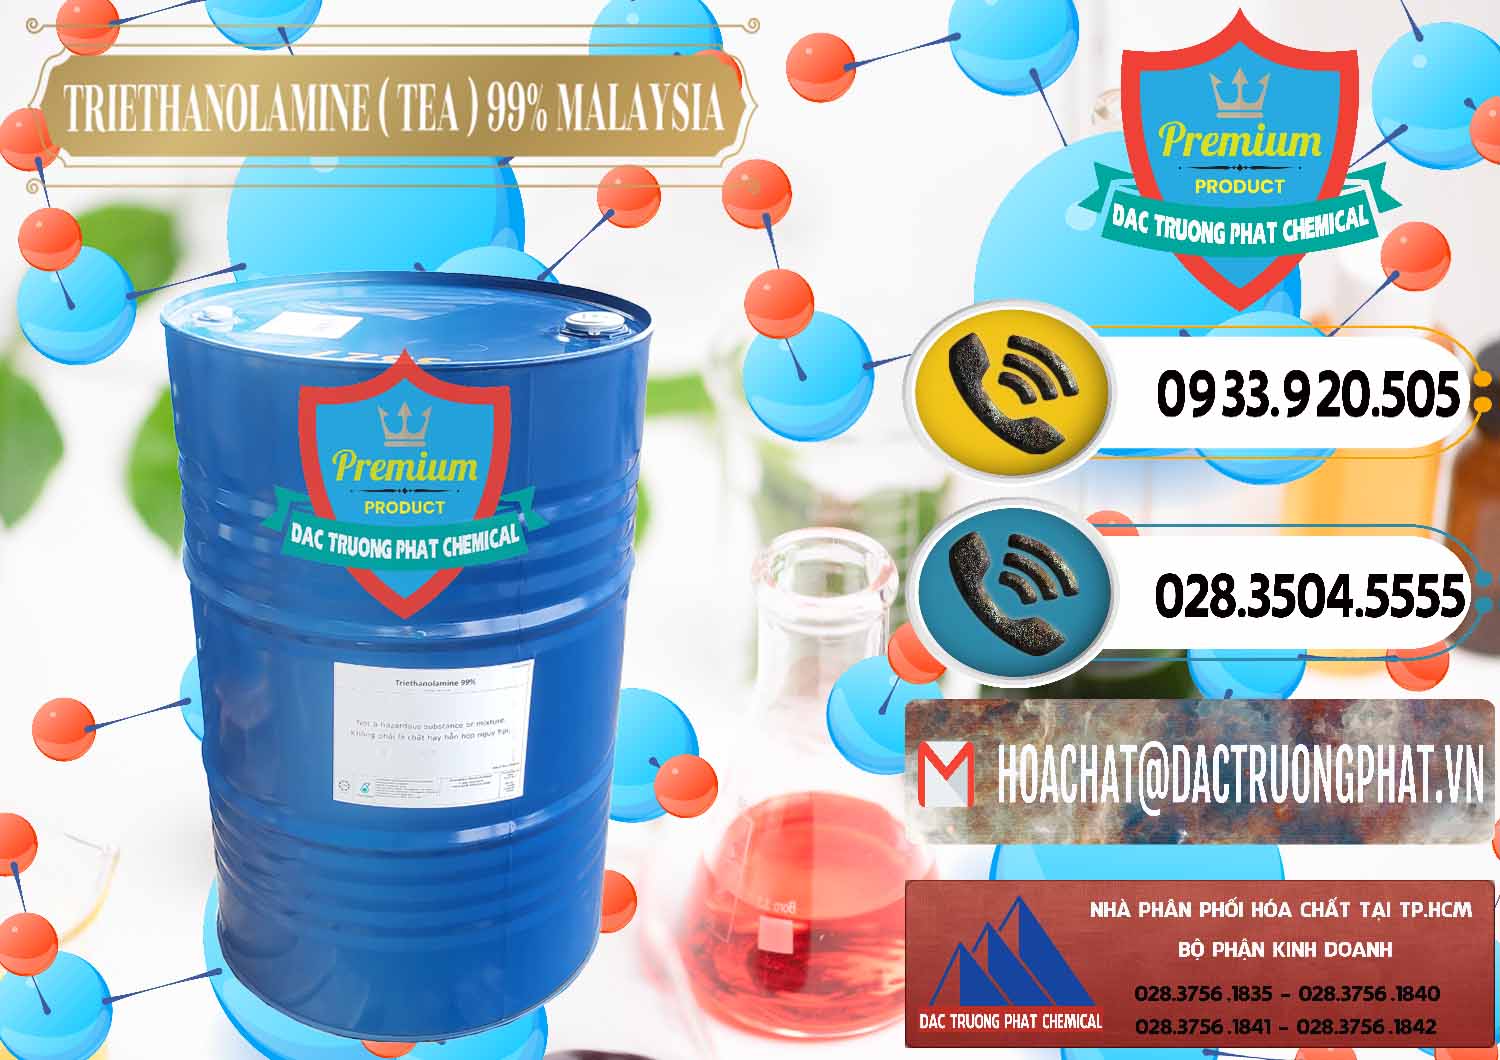 Nơi chuyên bán & cung ứng TEA - Triethanolamine 99% Mã Lai Malaysia - 0323 - Cung cấp hóa chất tại TP.HCM - hoachatdetnhuom.vn